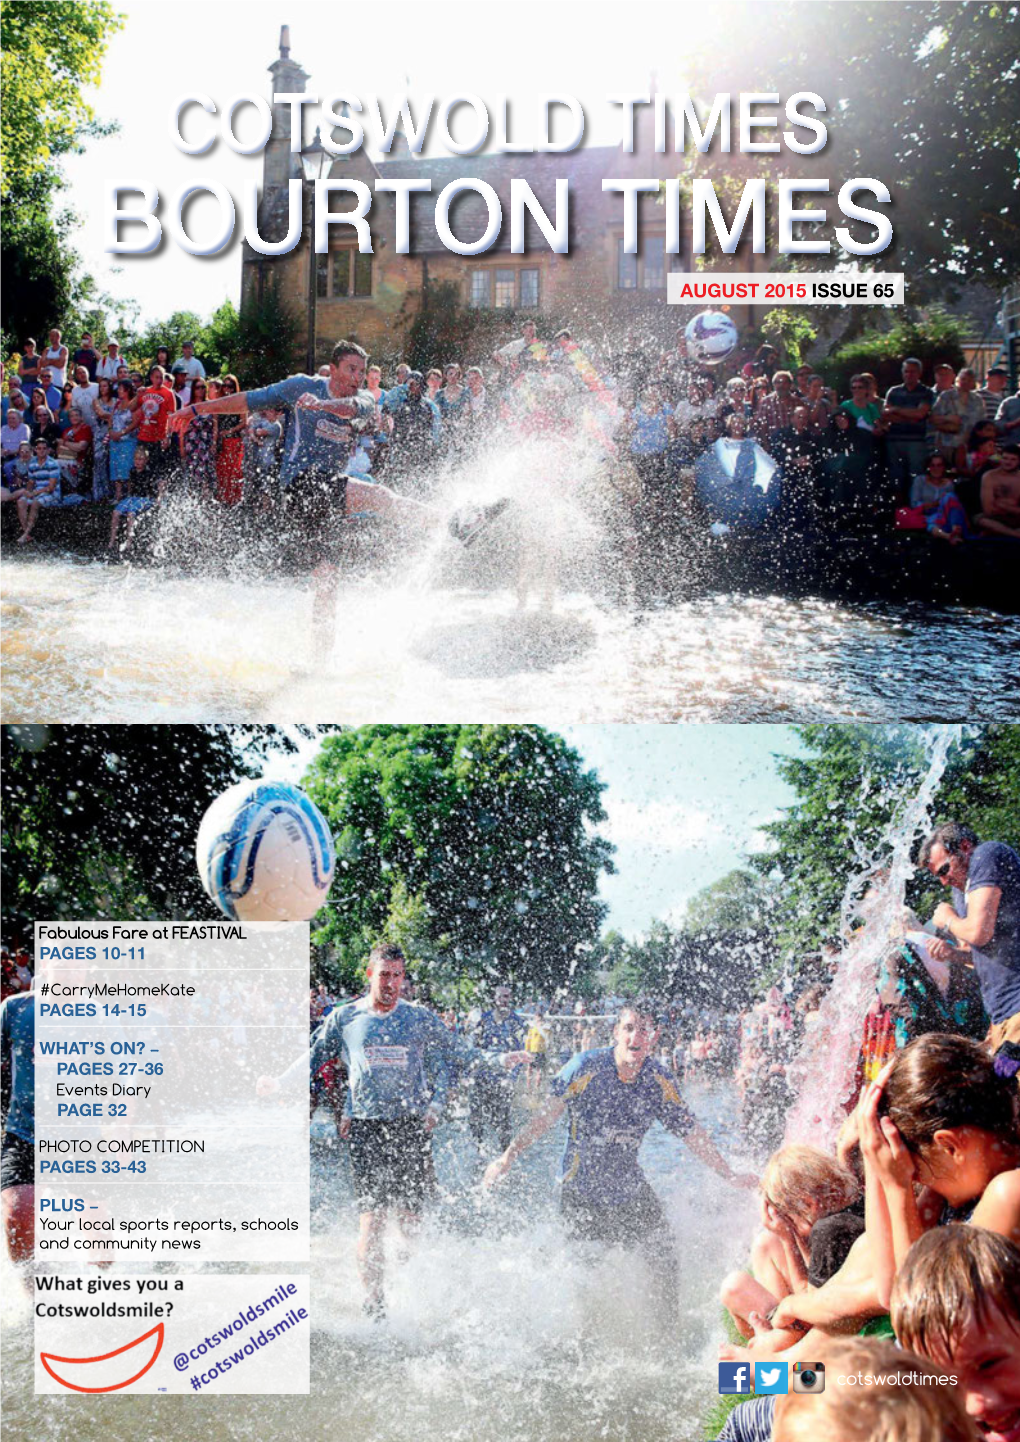 Bourton Times